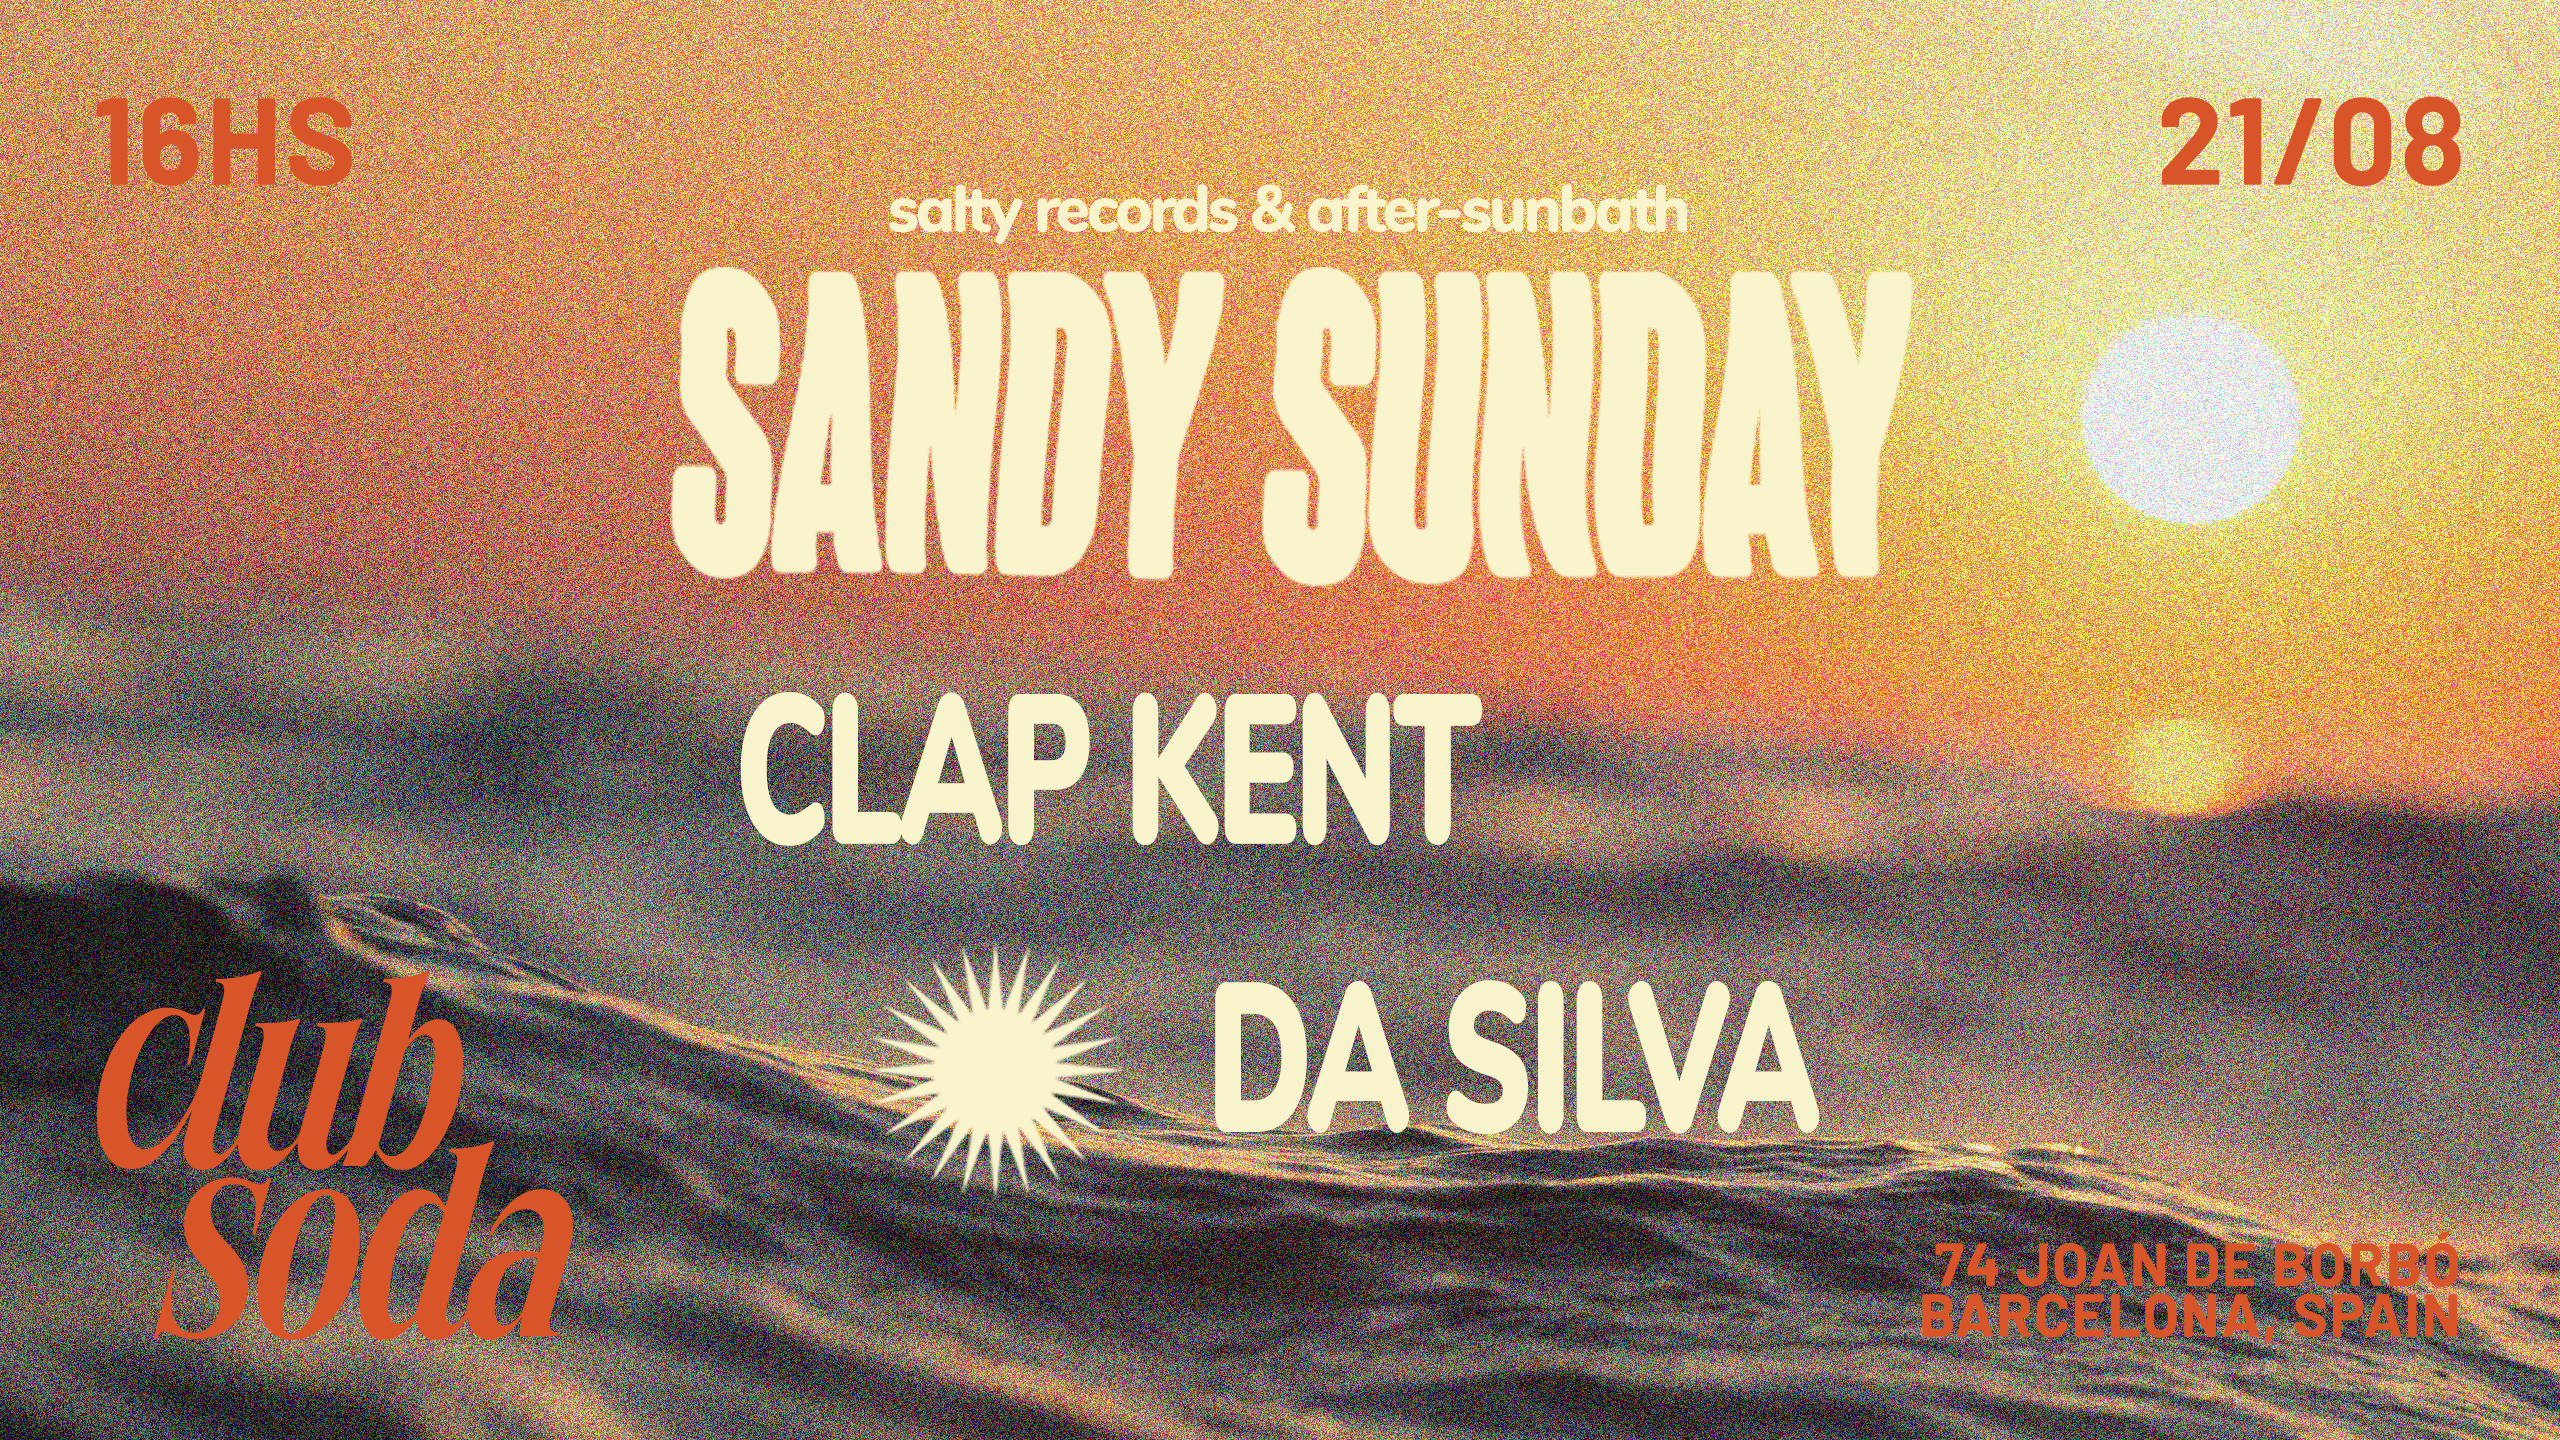 Sandy Sunday feat. Clap Kent & Da Silva at Club Soda, Barcelona